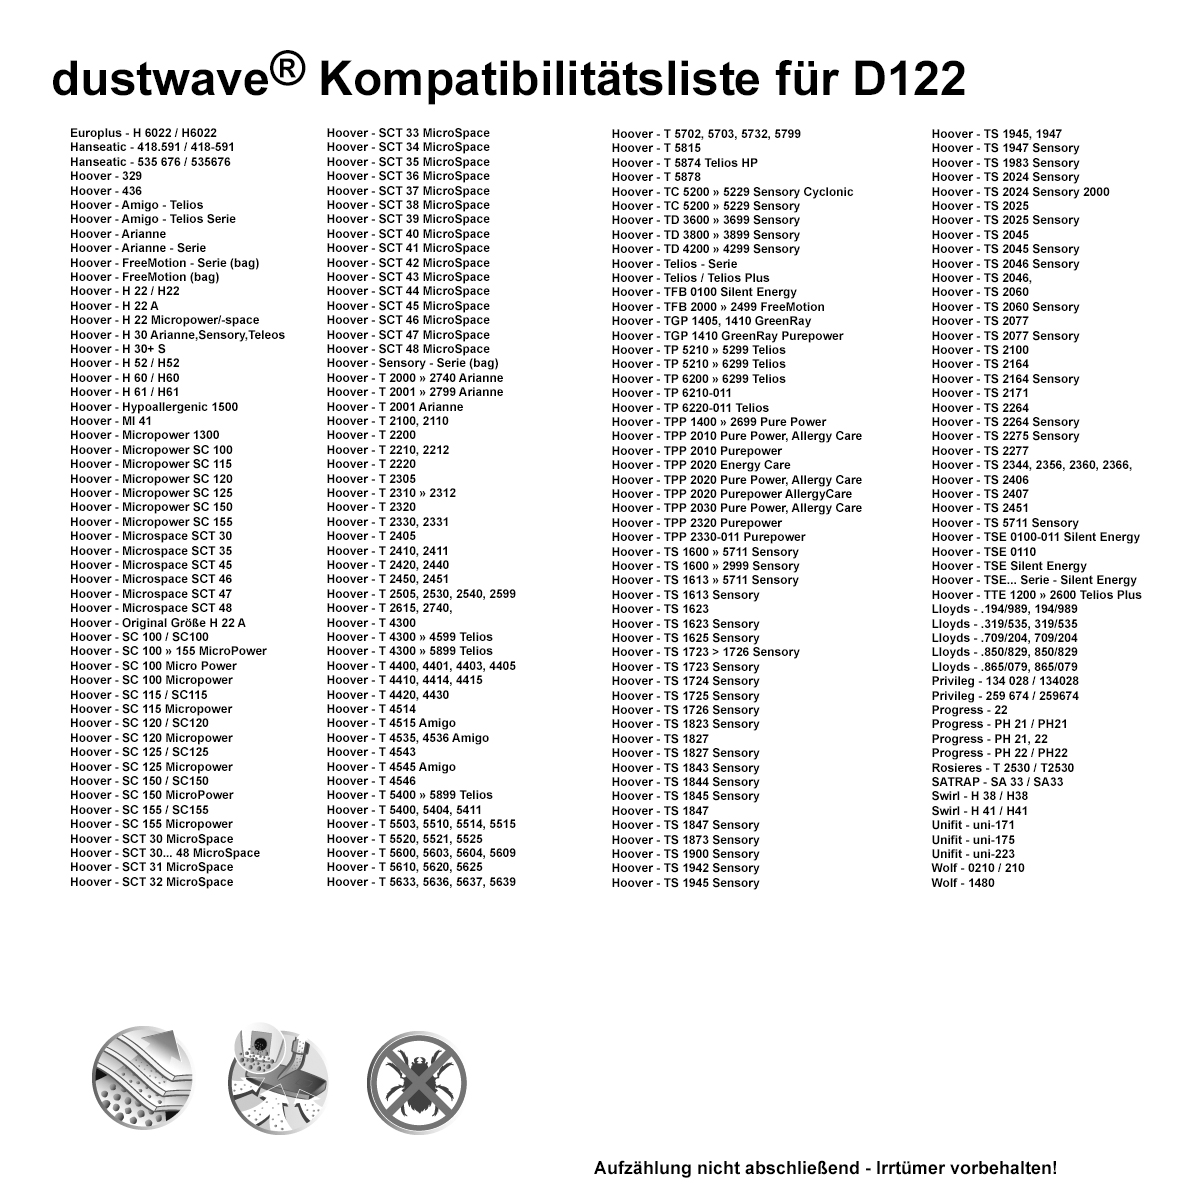 Dustwave® 20 Staubsaugerbeutel für Hoover T2101 / TRT2101 - hocheffizient, mehrlagiges Mikrovlies mit Hygieneverschluss - Made in Germany